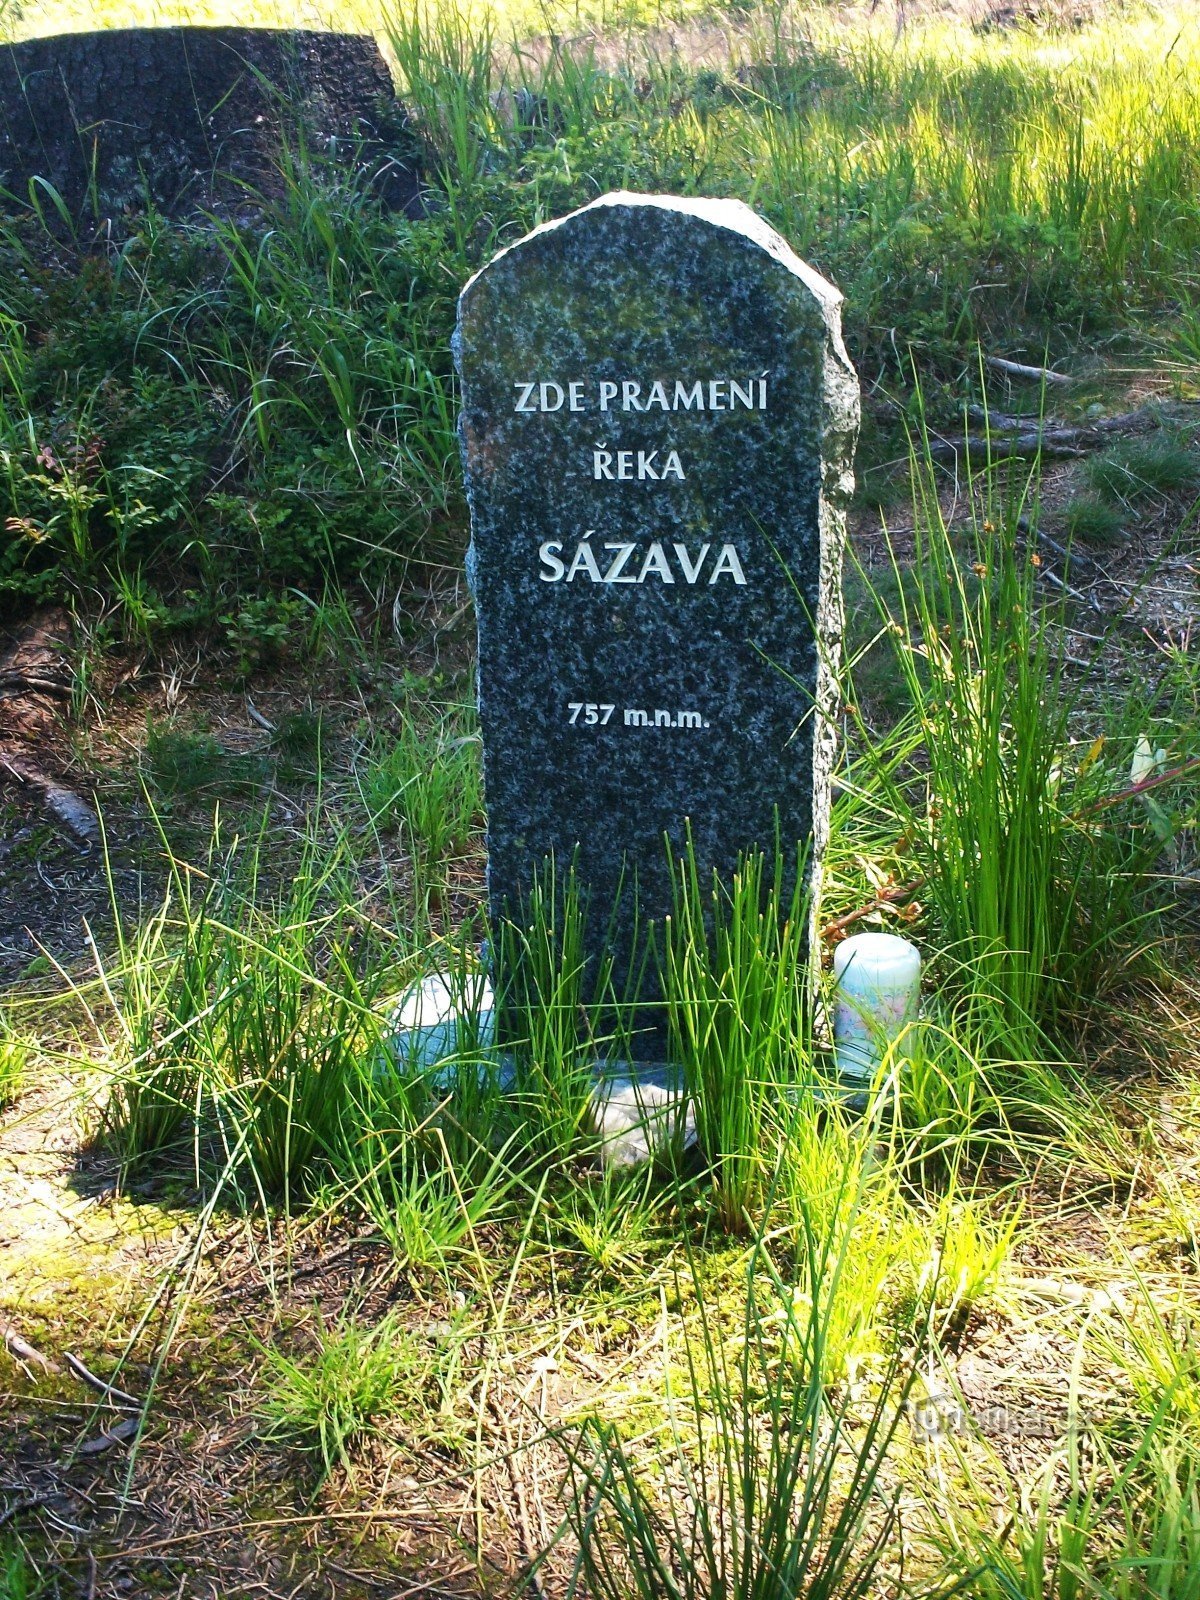 Designation of the spring of Sázava